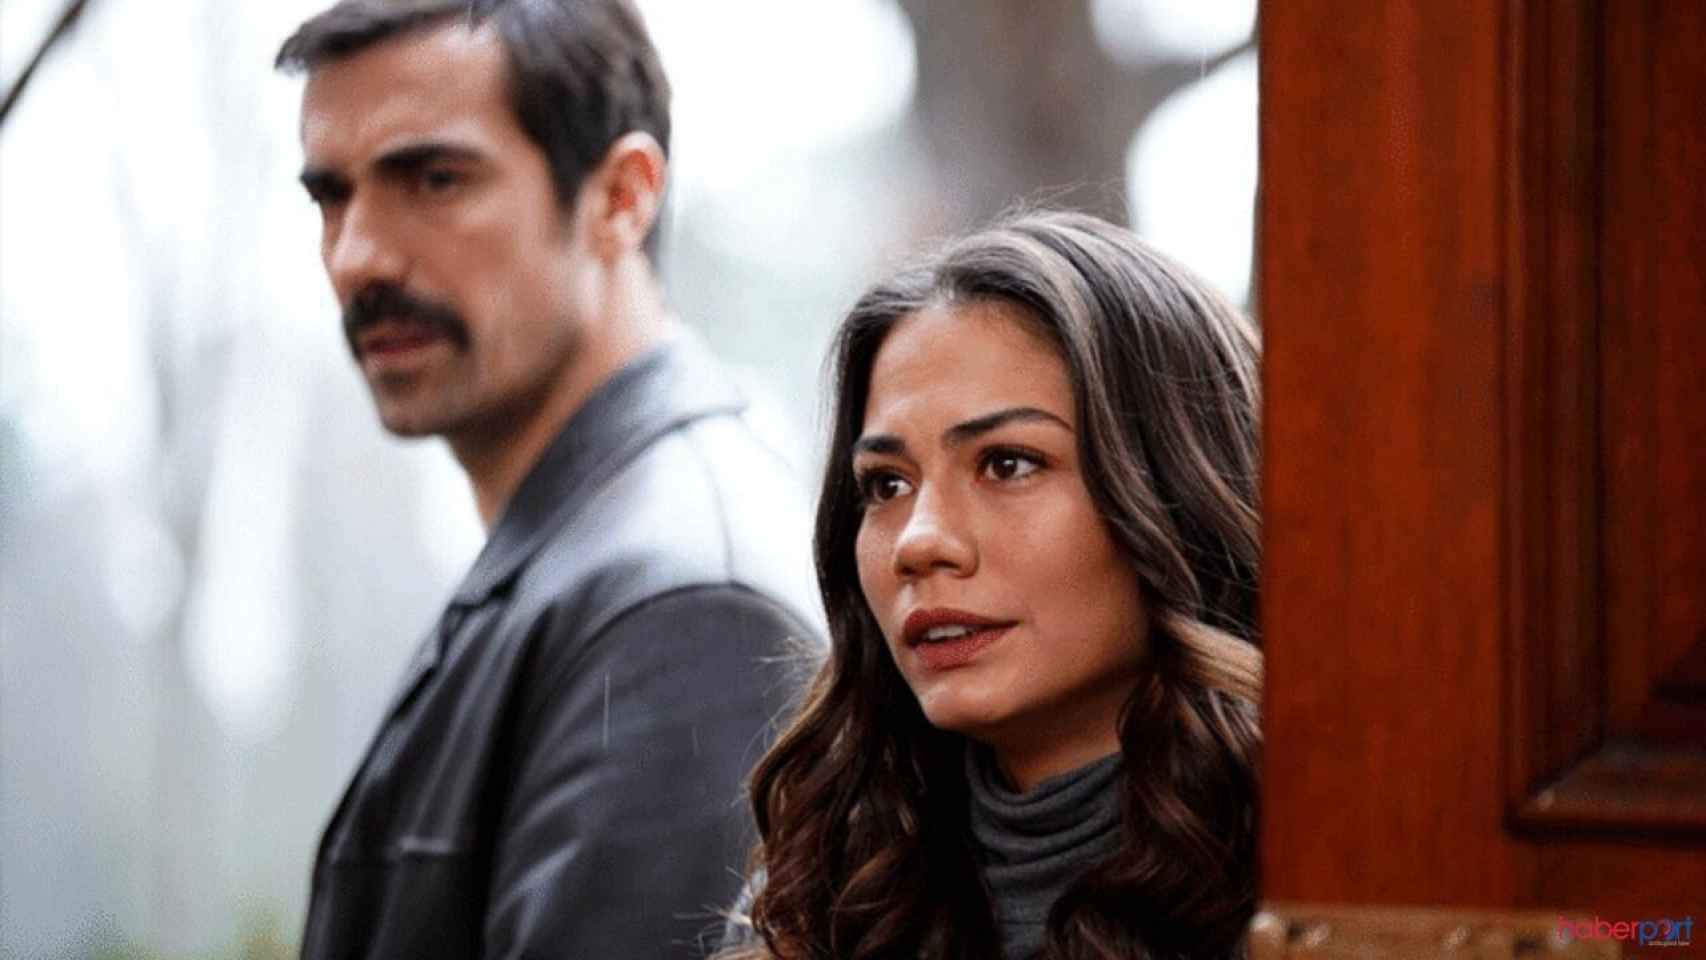 Telecinco seguirá apostando por ficción turca en prime time y estrenará 'Mi hogar, mi destino'